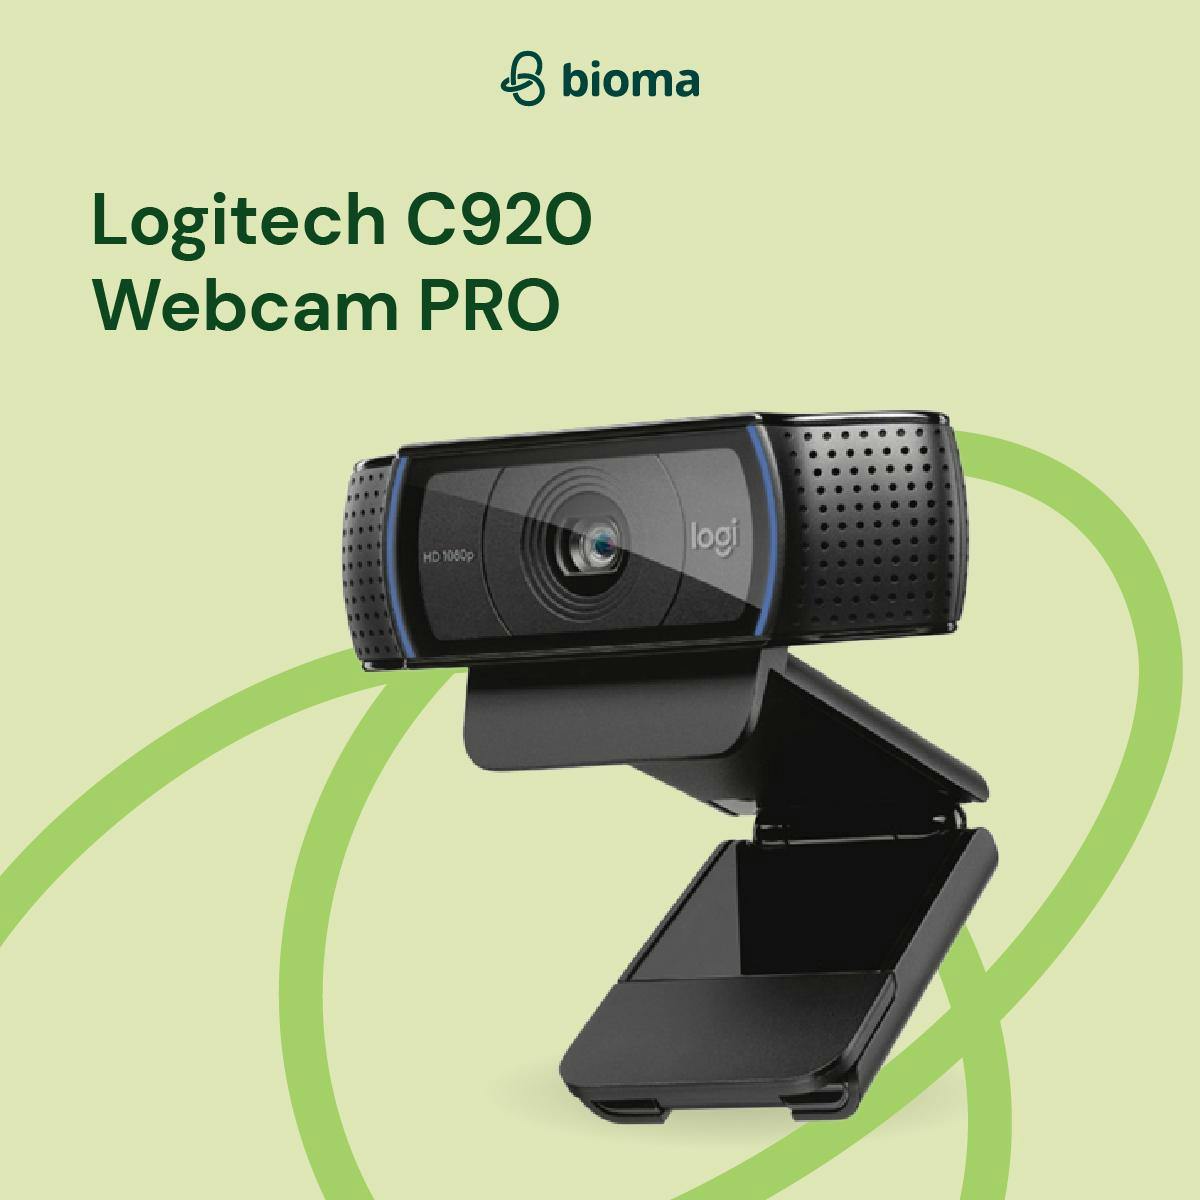 C920 Webcam PRO